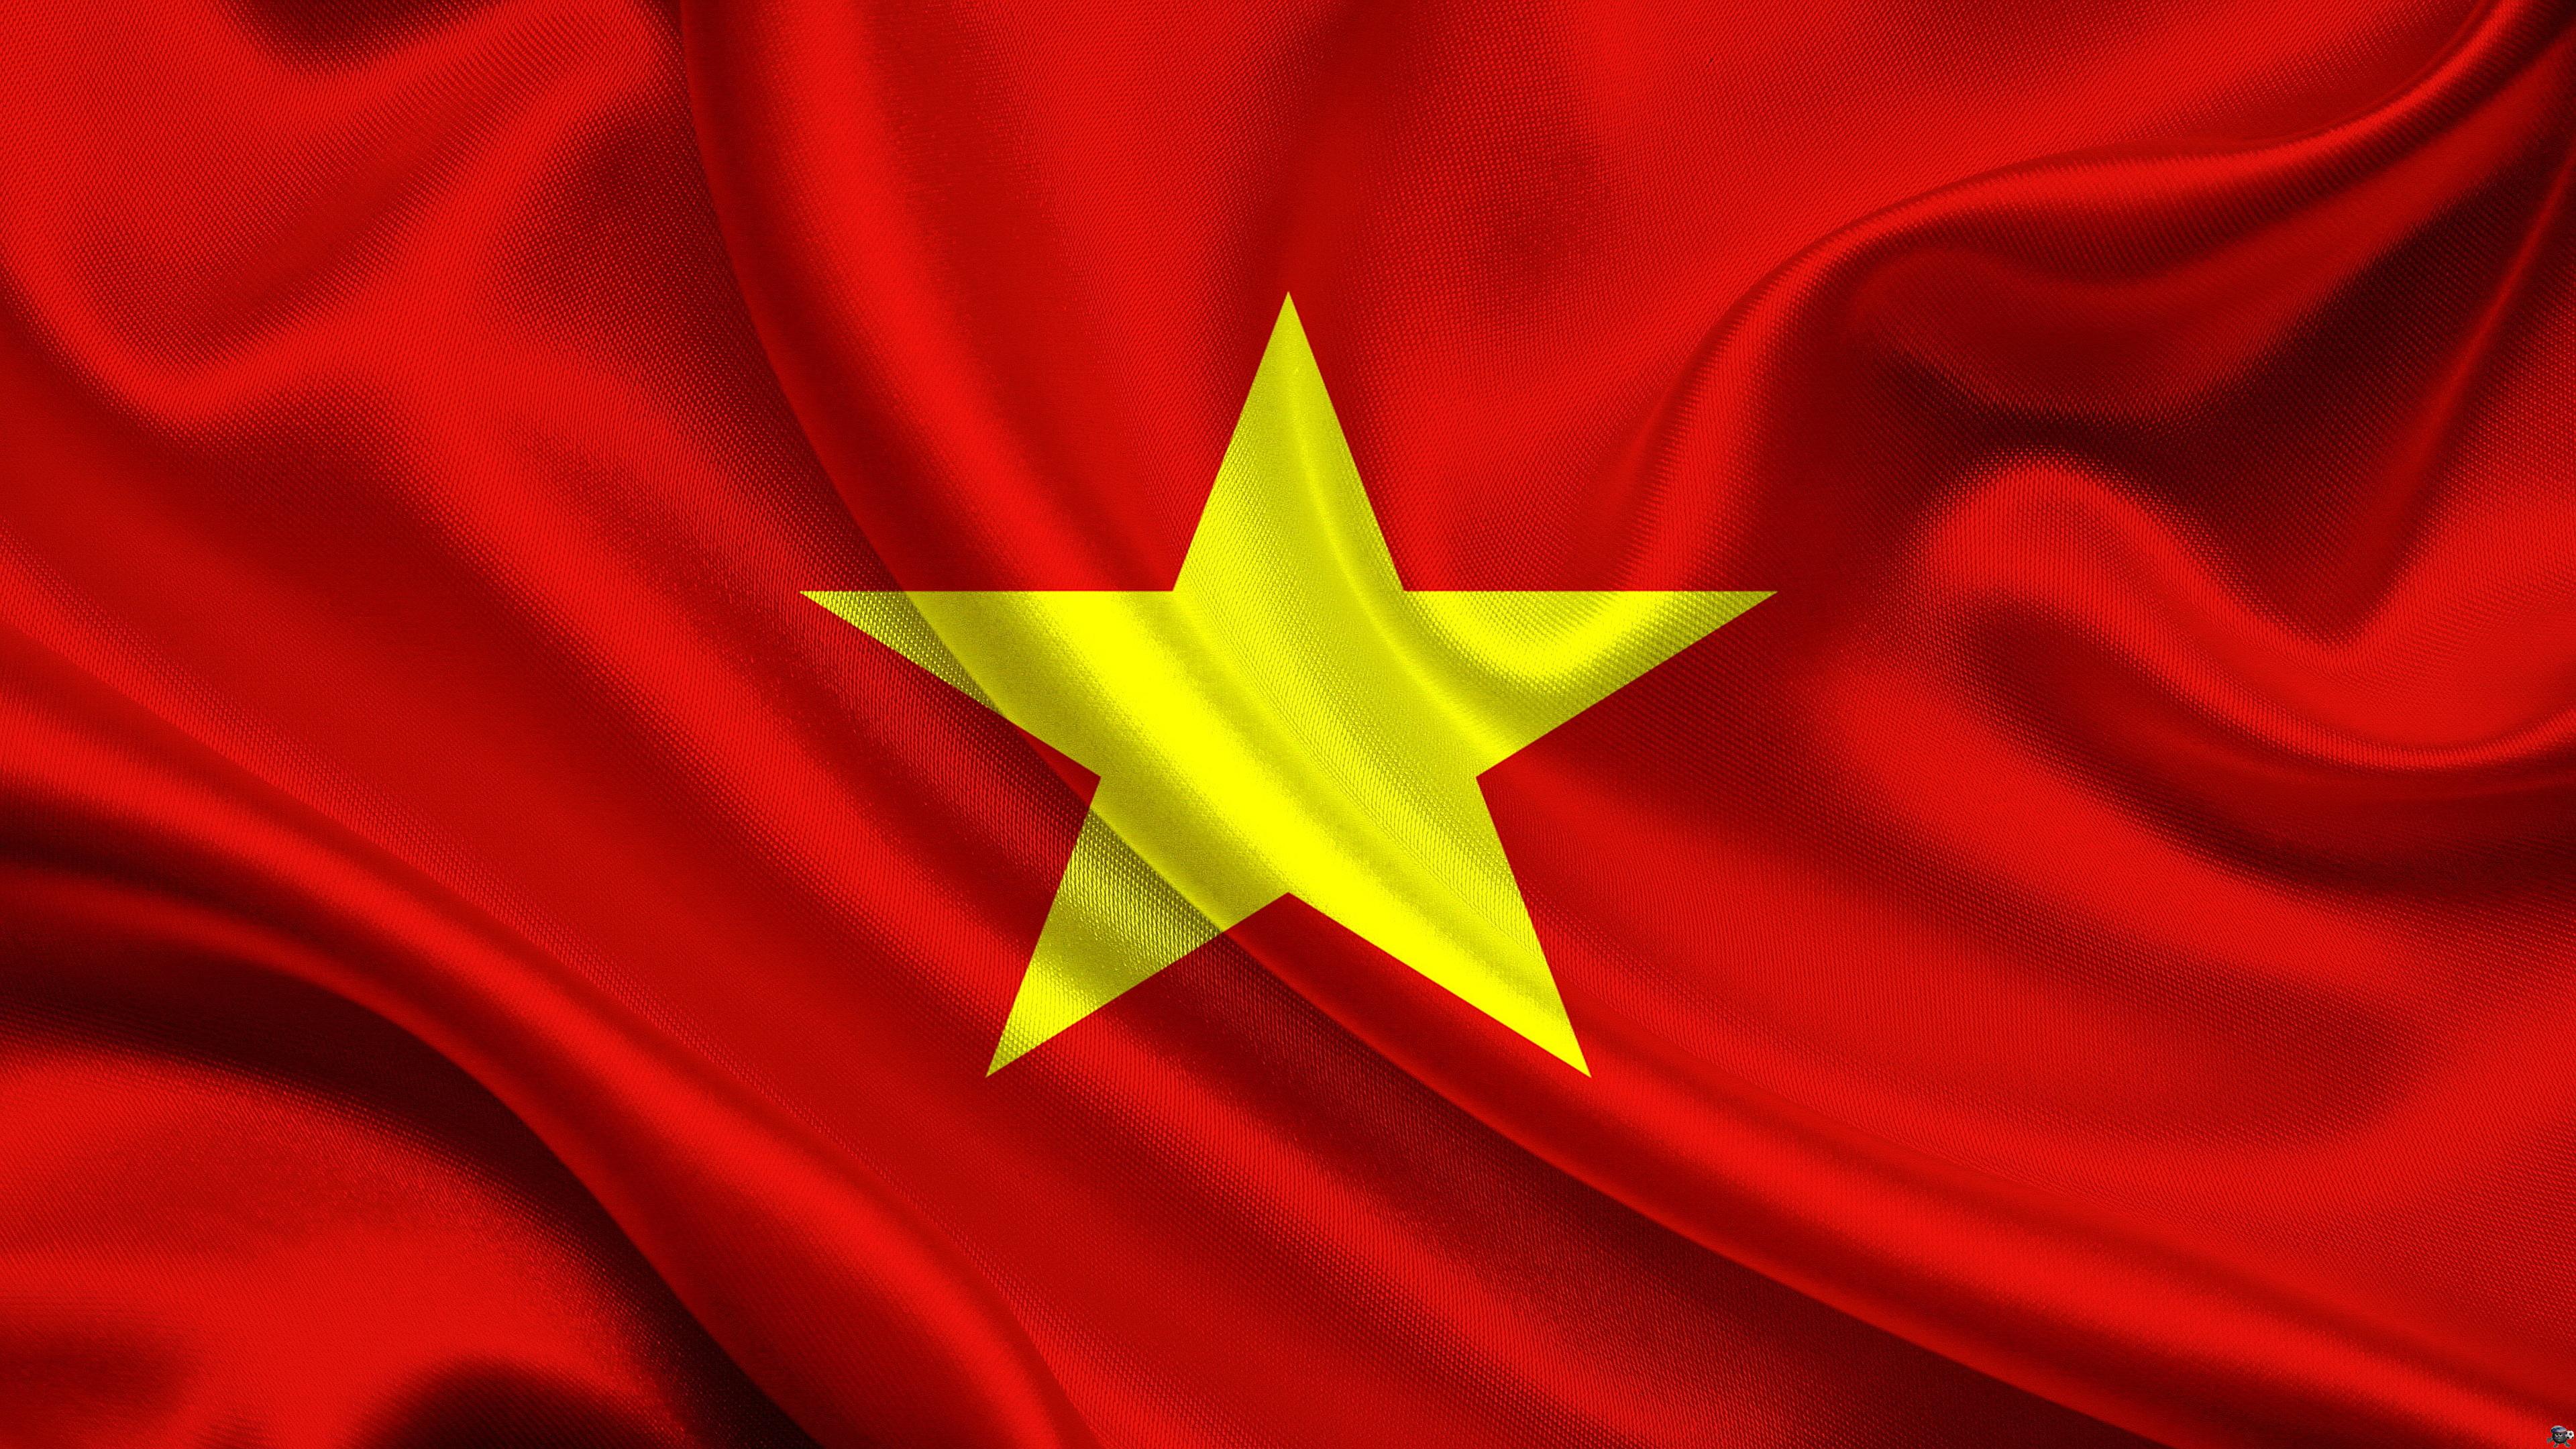 Tự do giữa trời - hình nền cờ Việt Nam: Cùng trải nghiệm không gian rộng mở với hình nền cờ Việt Nam Tự do giữa trời - biểu tượng của sự tự do và độc lập. Với những hình ảnh độc đáo và phong cách tinh tế, bạn sẽ có được cảm giác như đang ngắm nhìn quốc kỳ vươn cao giữa không trung. Truy cập ngay để khám phá thêm về bộ sưu tập hình nền cờ Việt Nam đẳng cấp này!